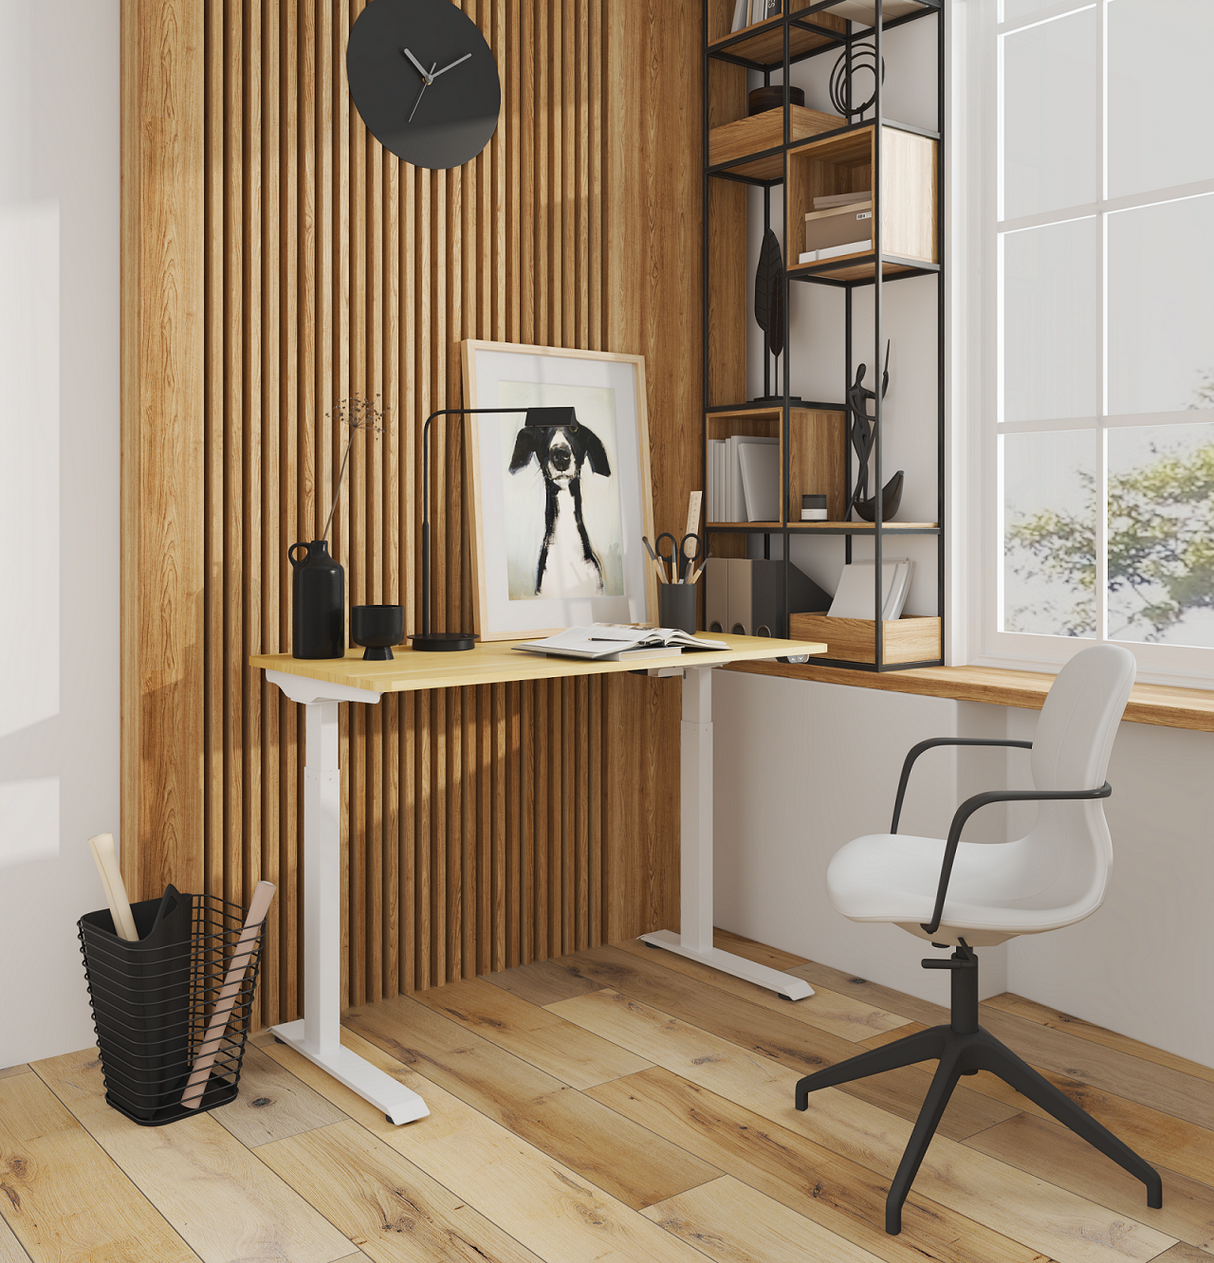 Spire zit-sta bureau elektrisch verstelbaar - ergonomische werkplek - in hoogte verstelbaar - max. hoogte 123 cm - min. hoogte 73cm